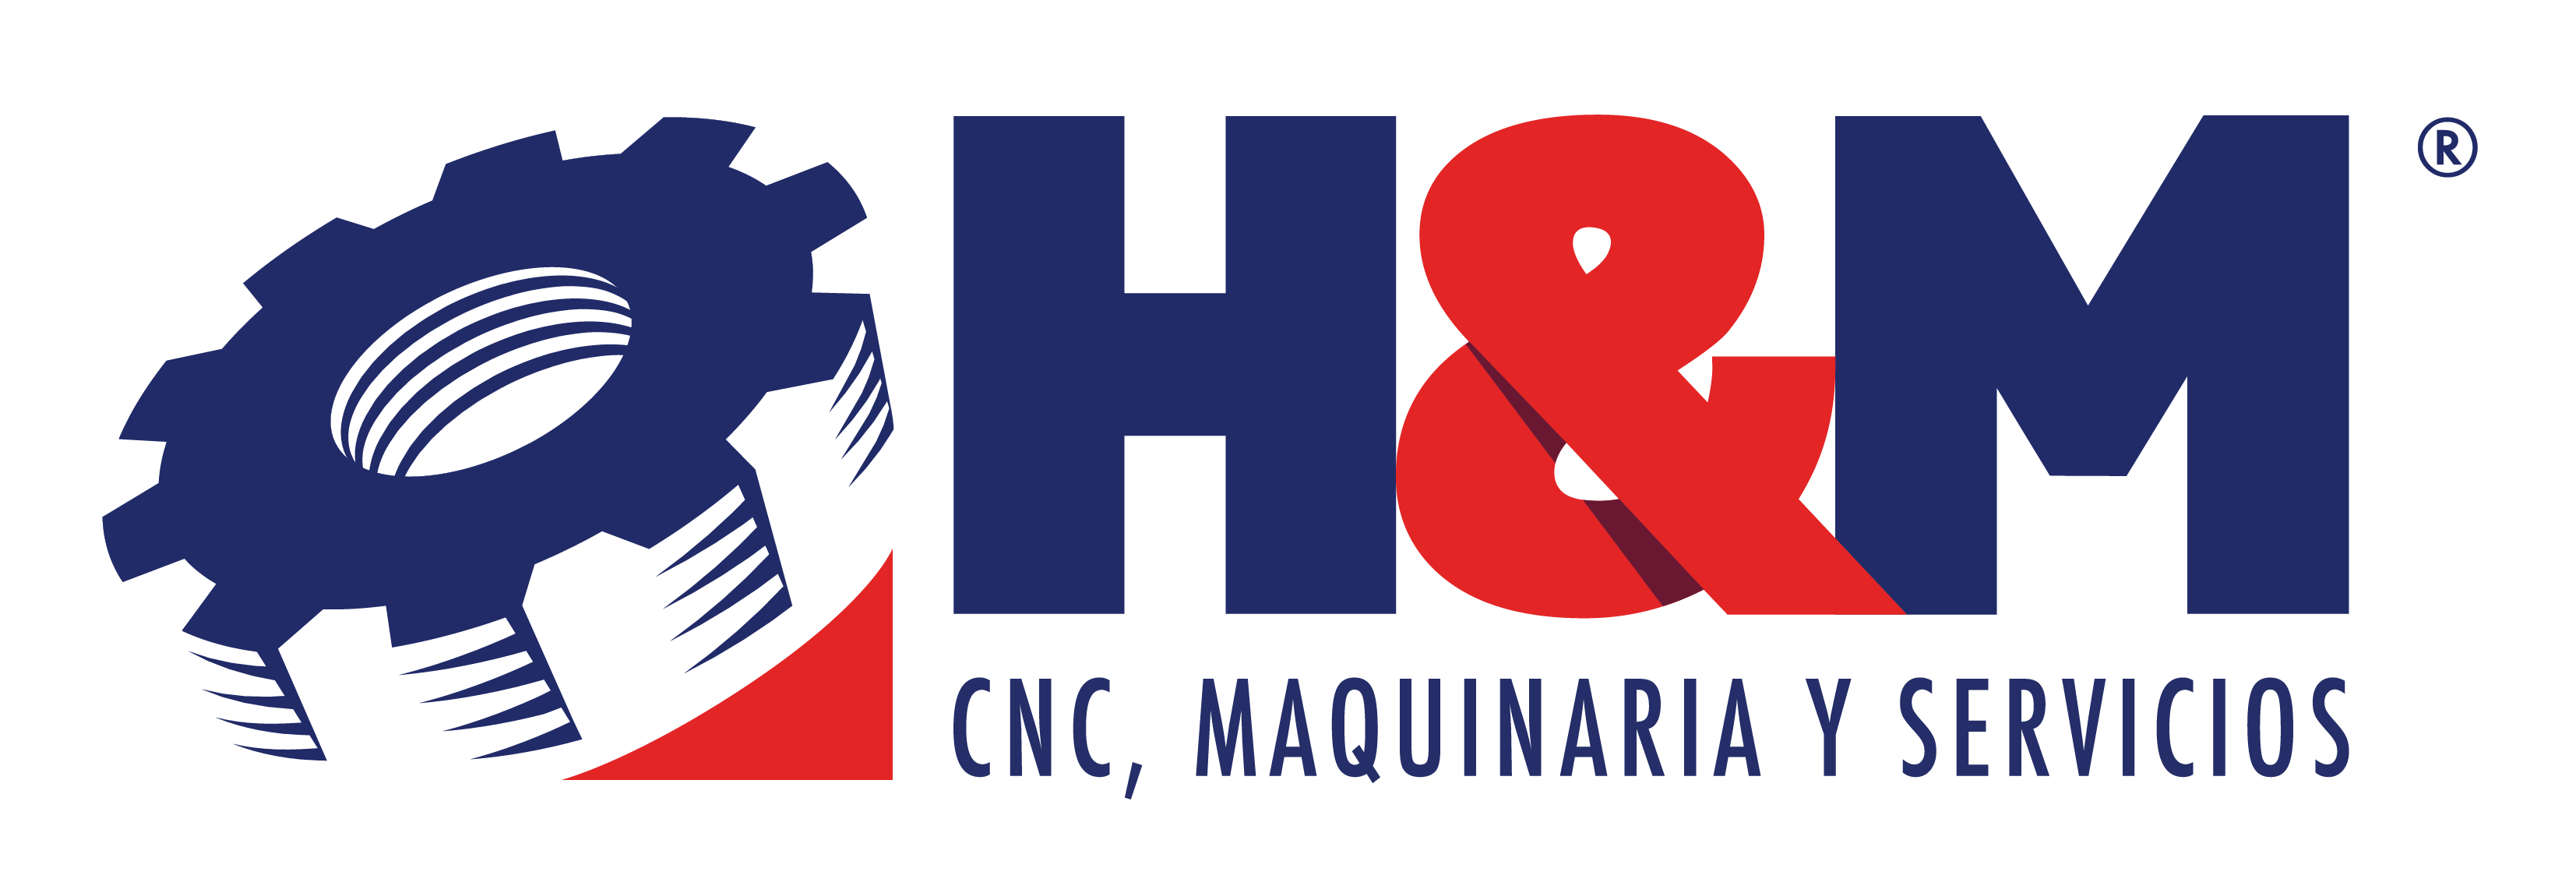 Maquinaria - H&M Maquinaria CNC maquinaria y servicios